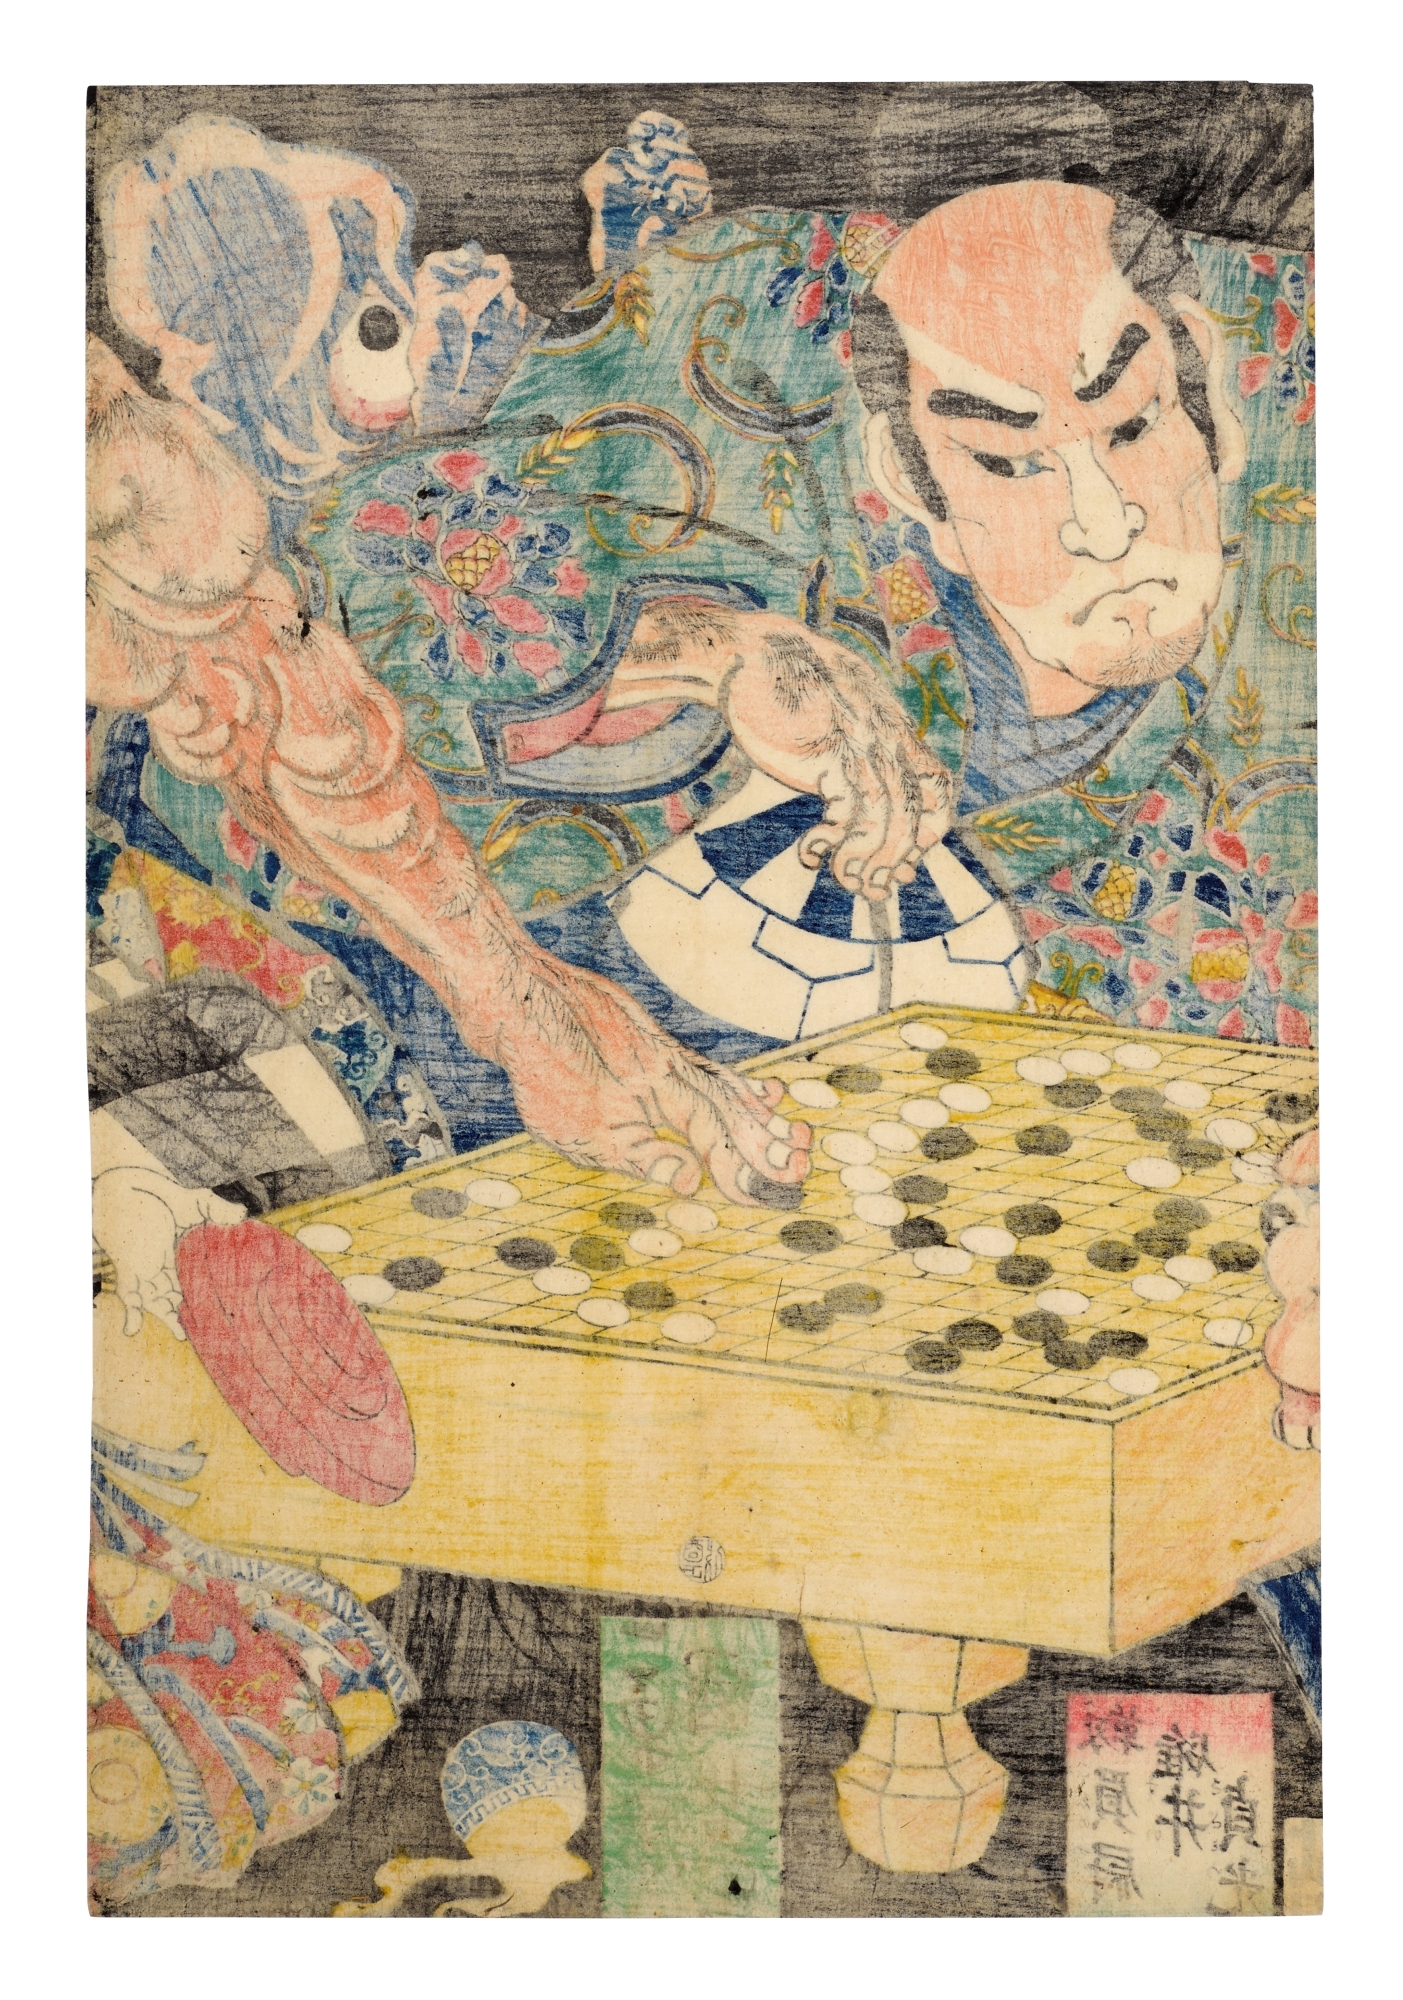 Utagawa Kuniyoshi, Sakata no Kintoki, Usui Sadamitsu and Genji Tsuna  subdue monsters while playing go (1861)